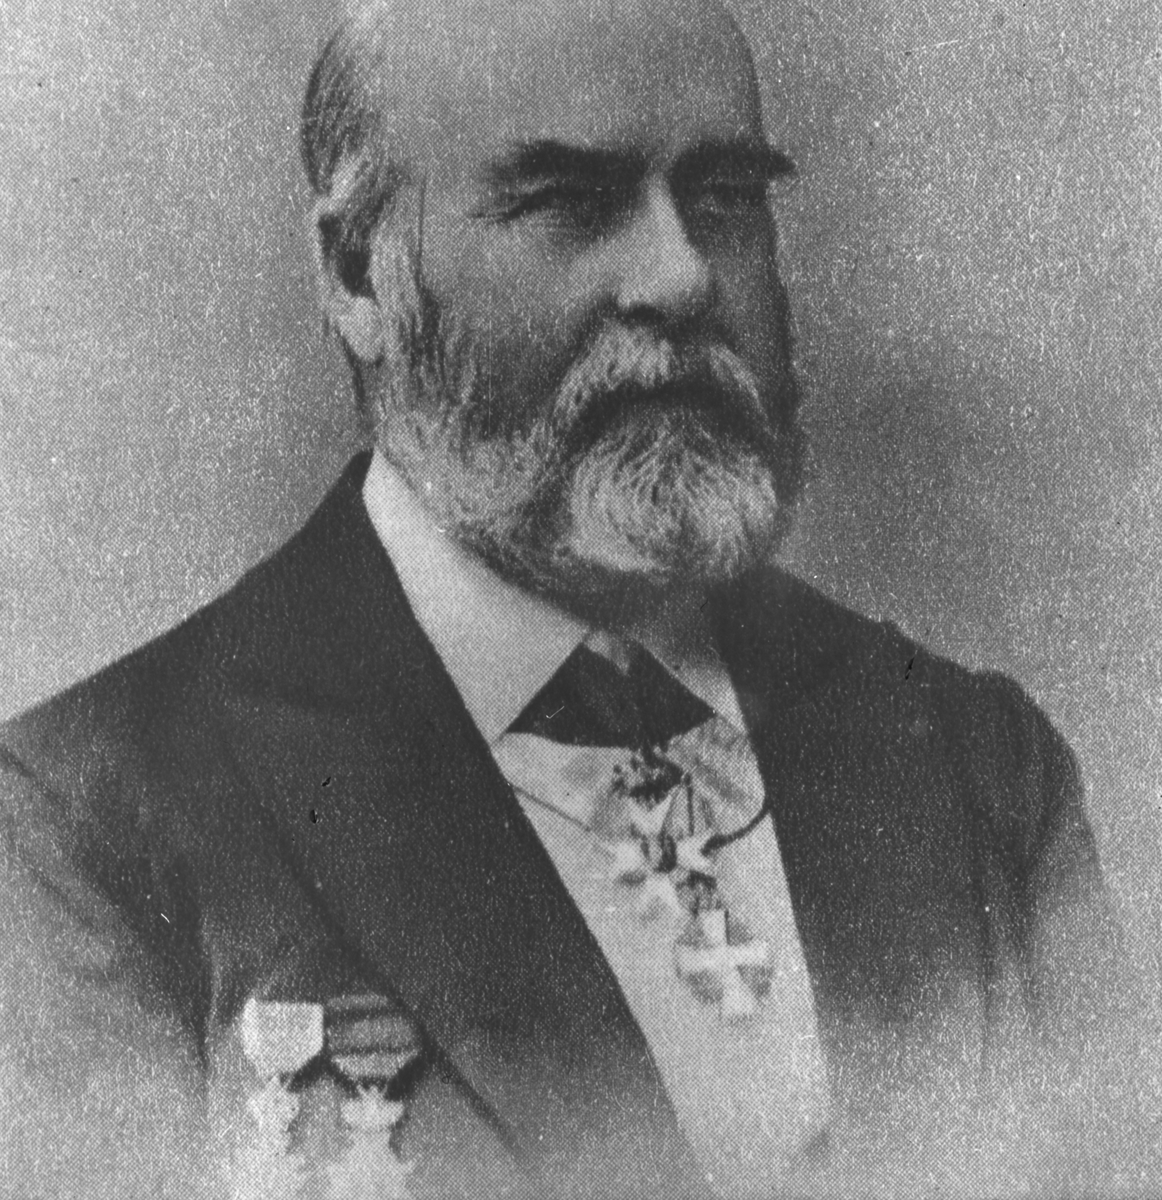 Göthe Wilhelm Svenson 1828-1906 Märkesman inom örlogsmarint skeppsbyggeri. Han konstrurerade kanonbåtar.